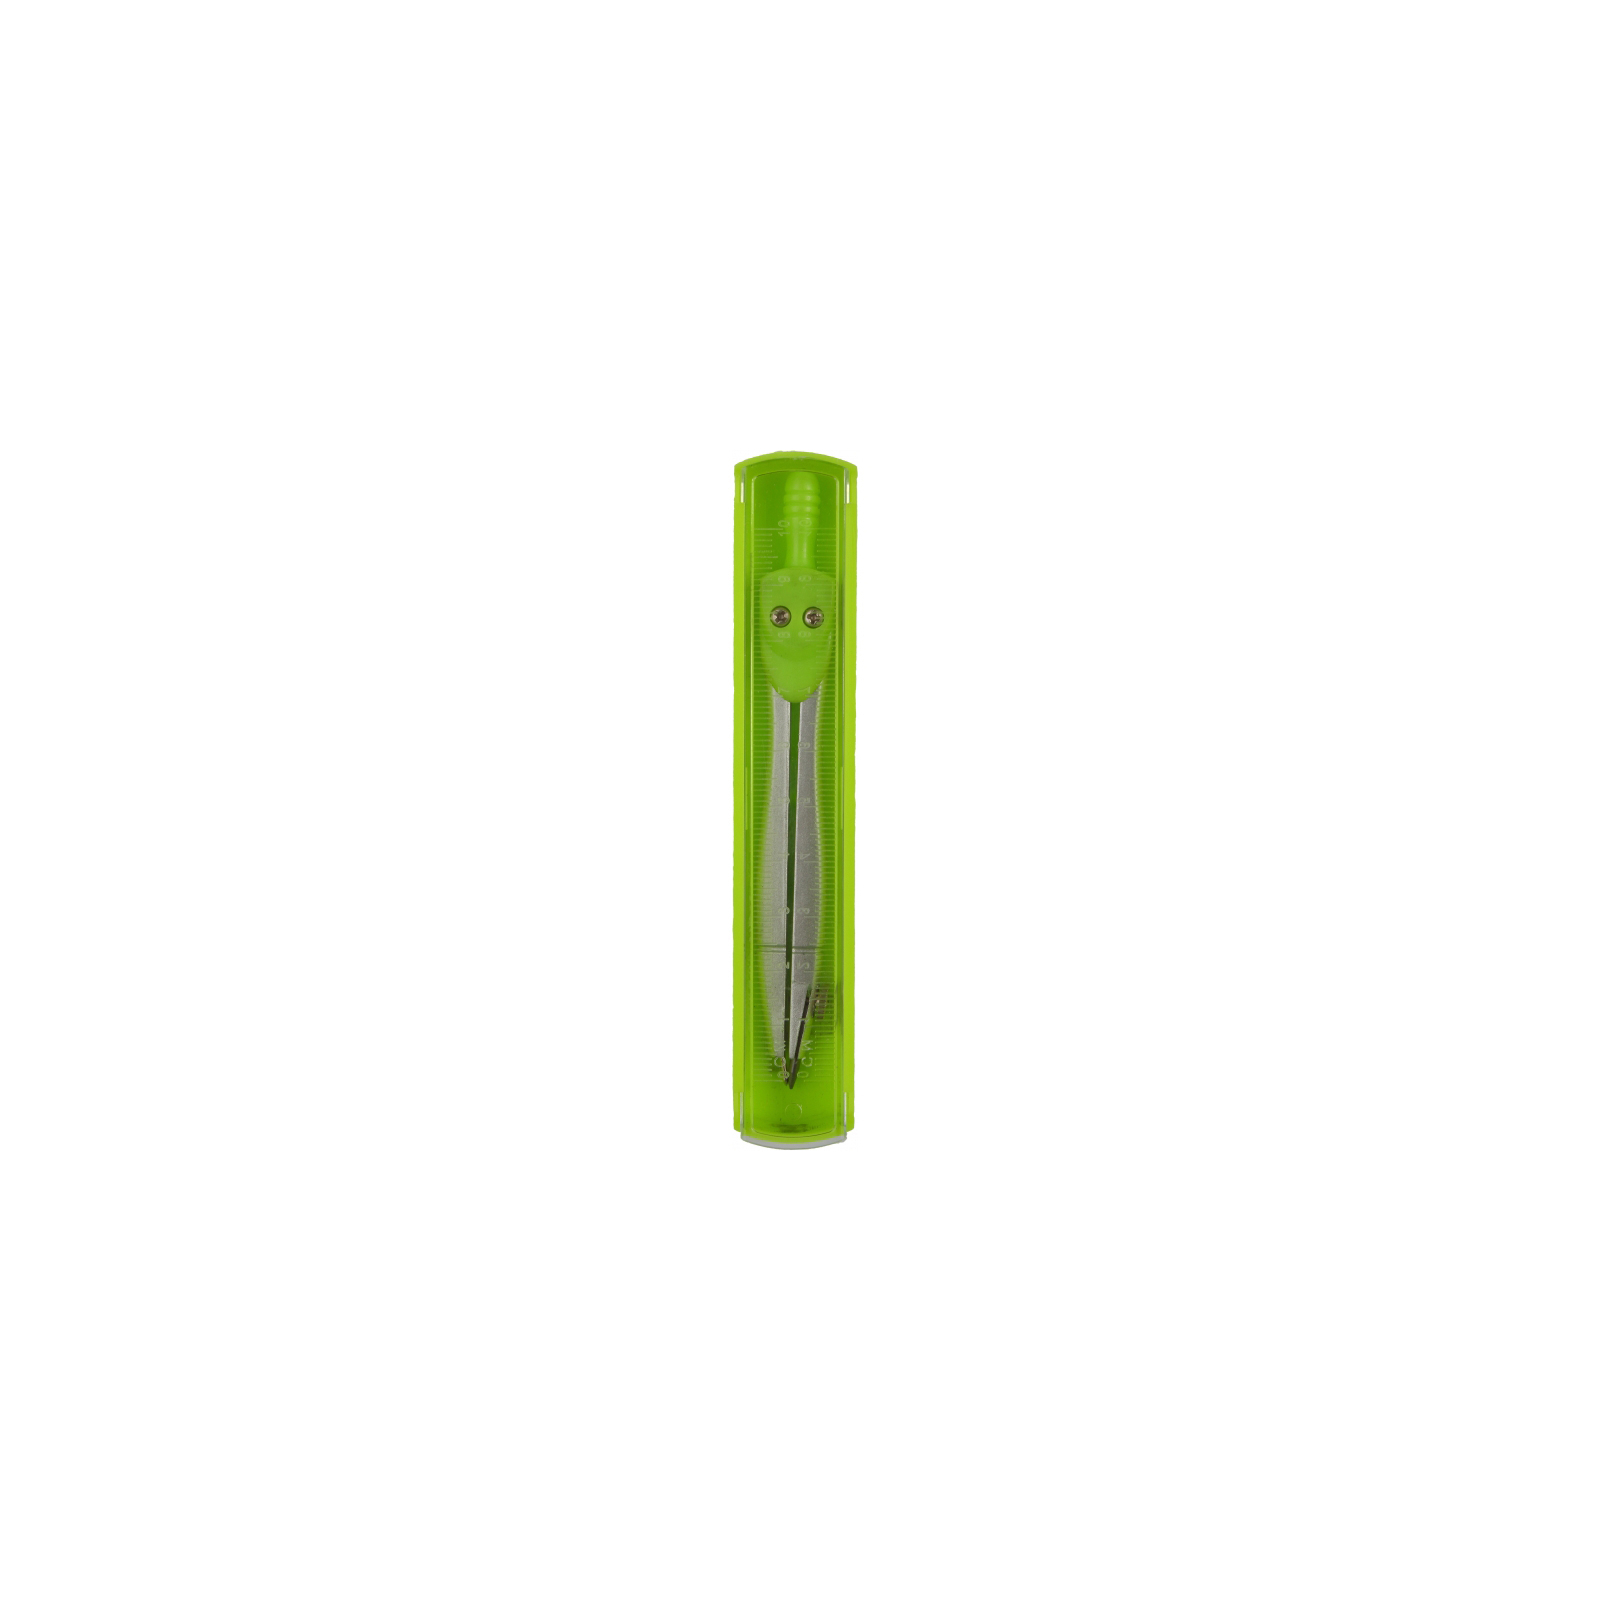 Циркуль Cool For School с линейкой зеленый (CF81436)